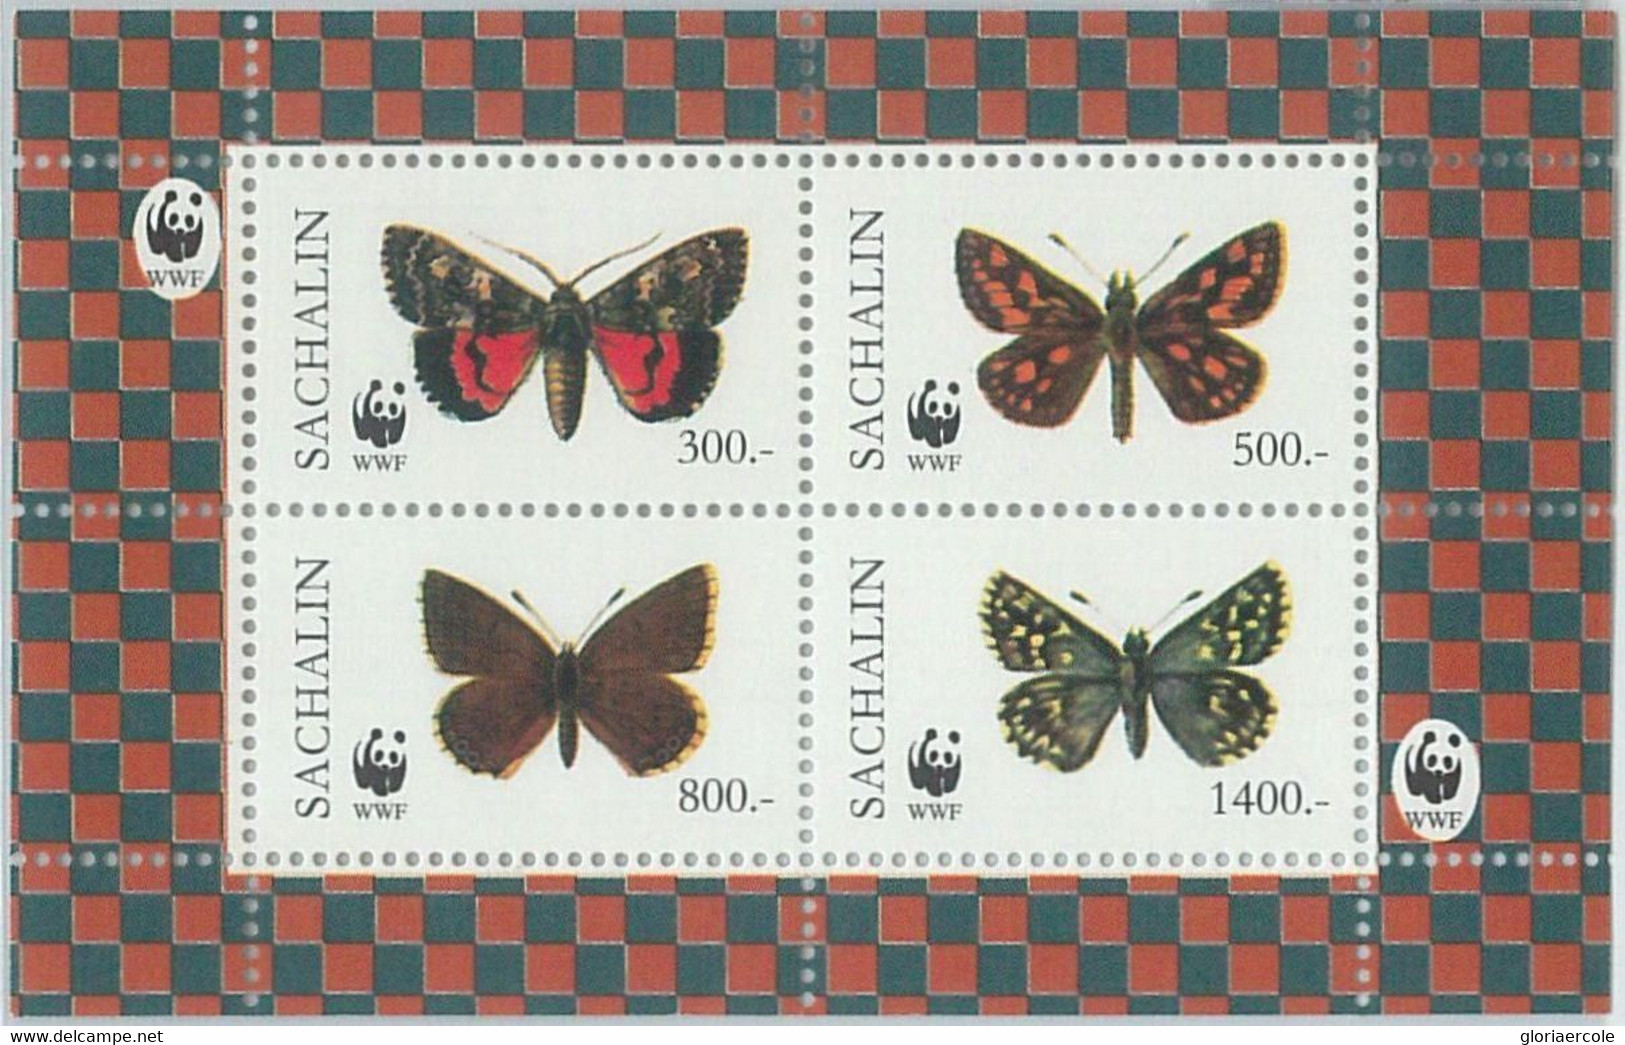 M2003 - RUSSIAN STATE, SHEET: WWF, Butterflies, Insects  R04.22 - Gebruikt